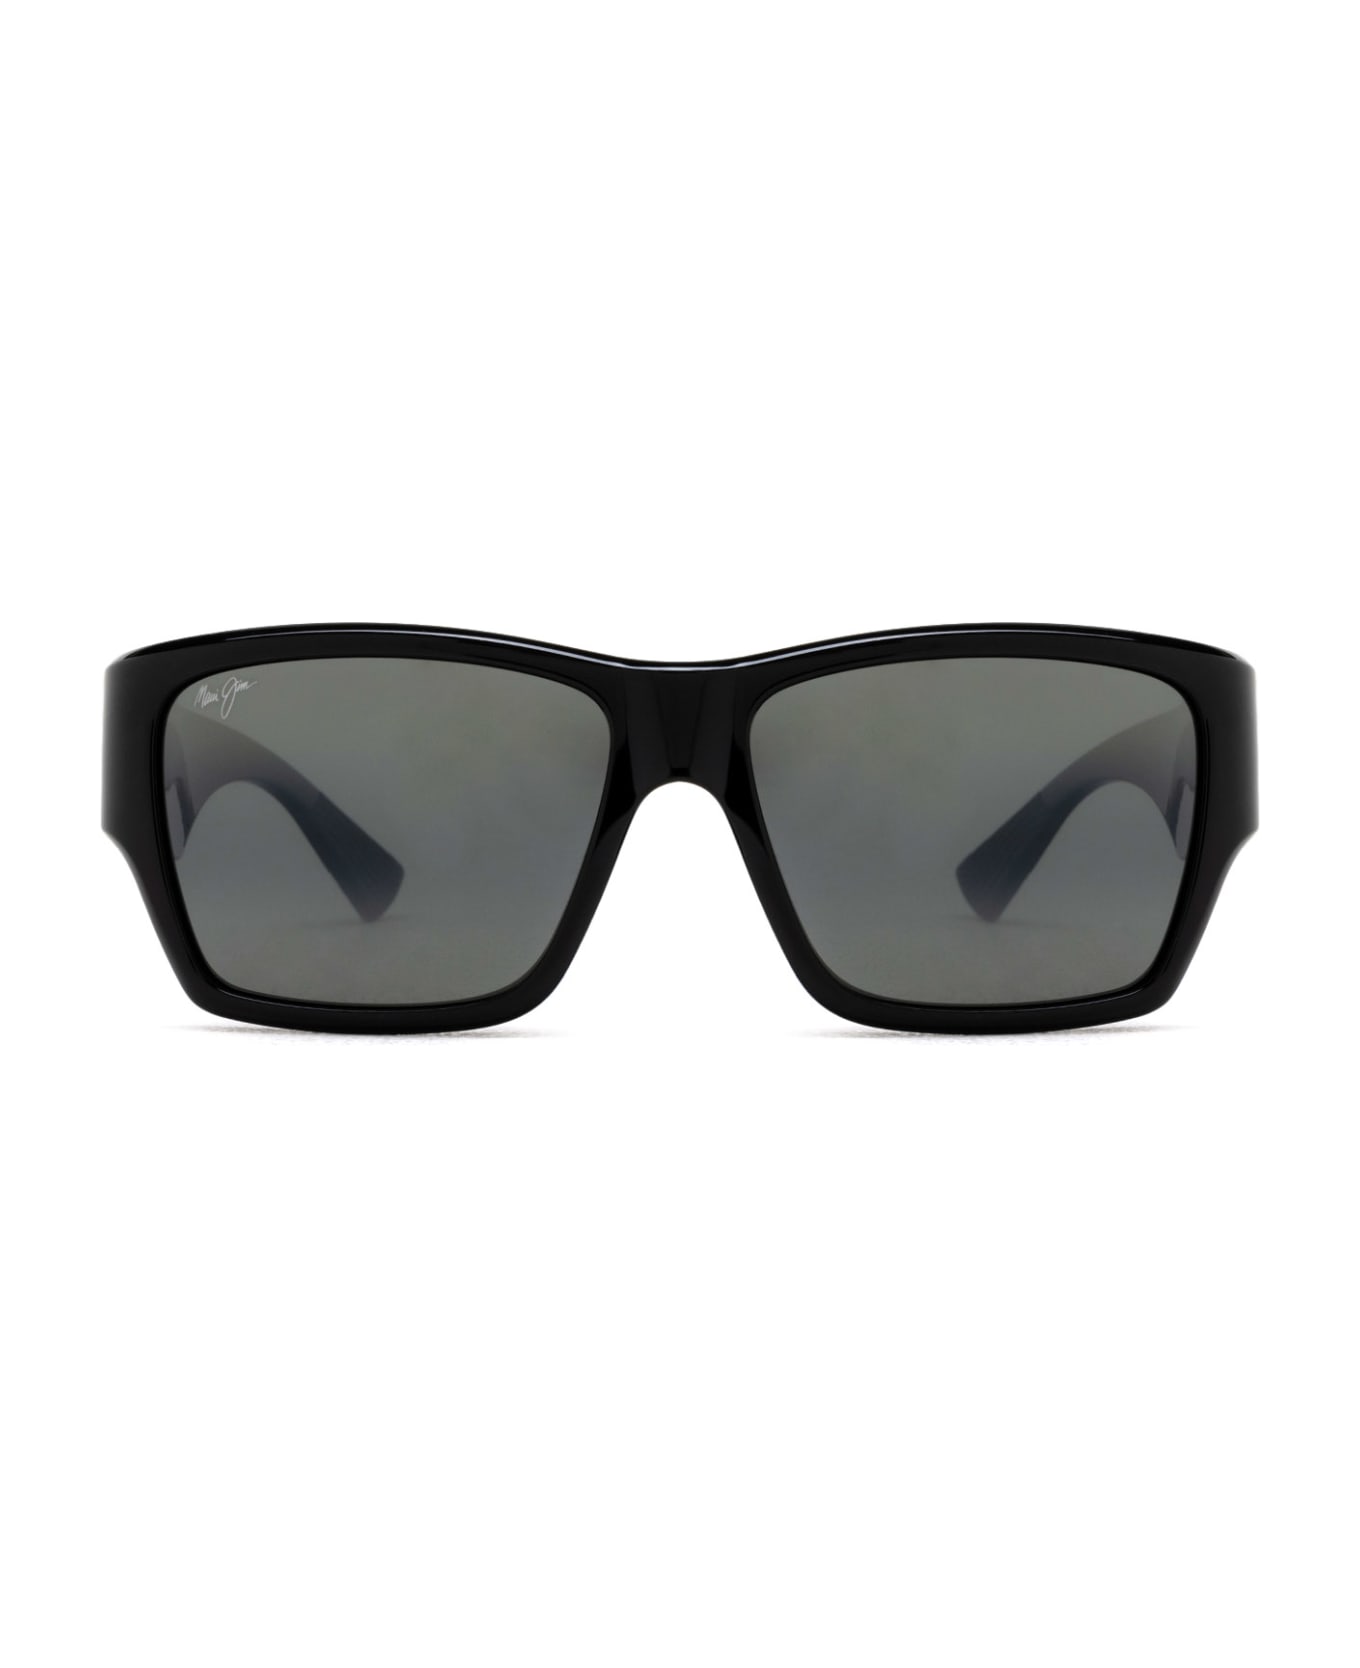 Maui Jim Mj614 Shiny Black Sunglasses - Shiny Black